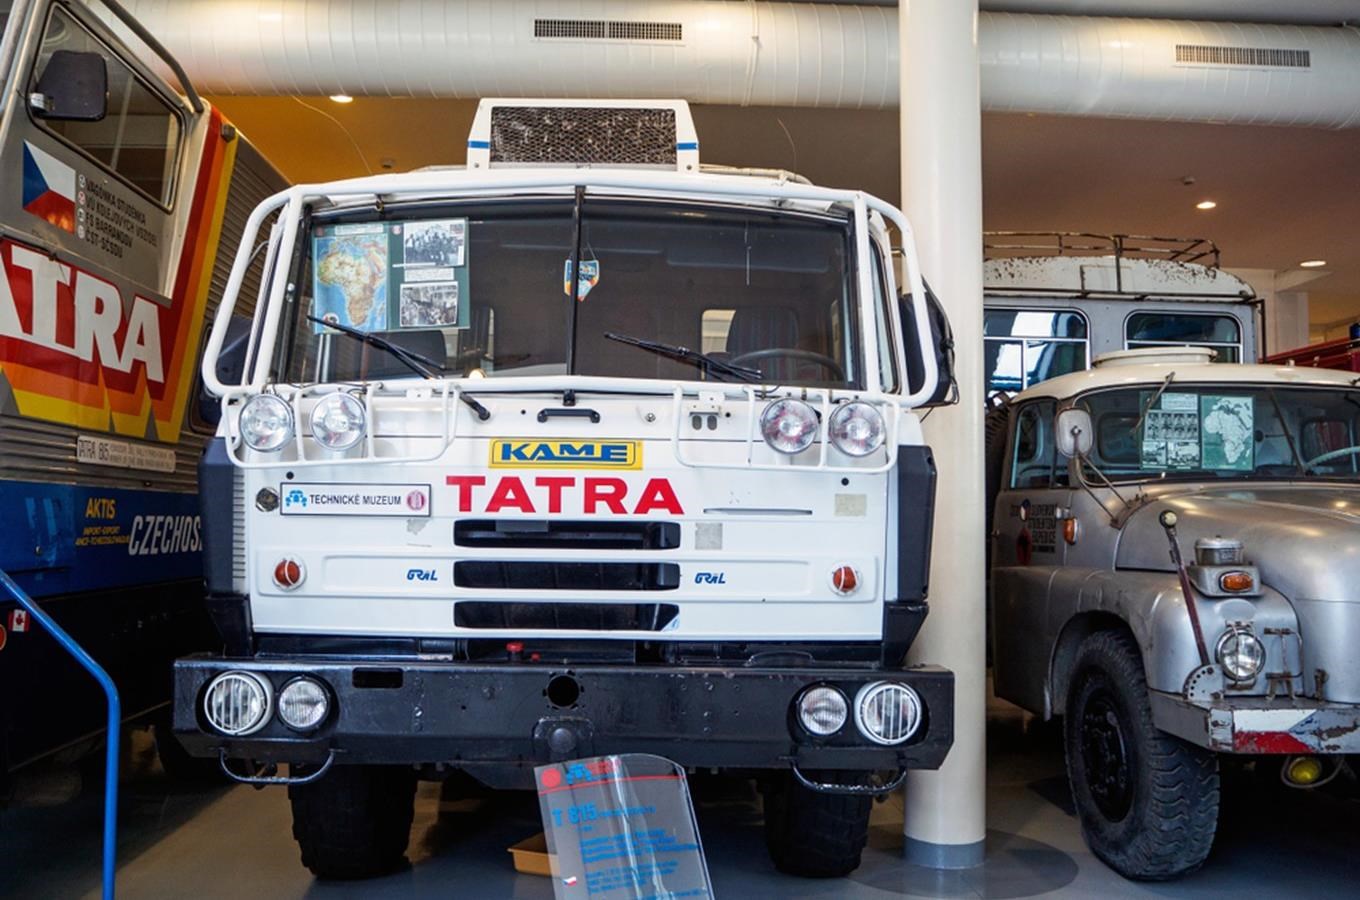 Muzeum automobilů Tatra v Kopřivnici se rozroste o nový areál